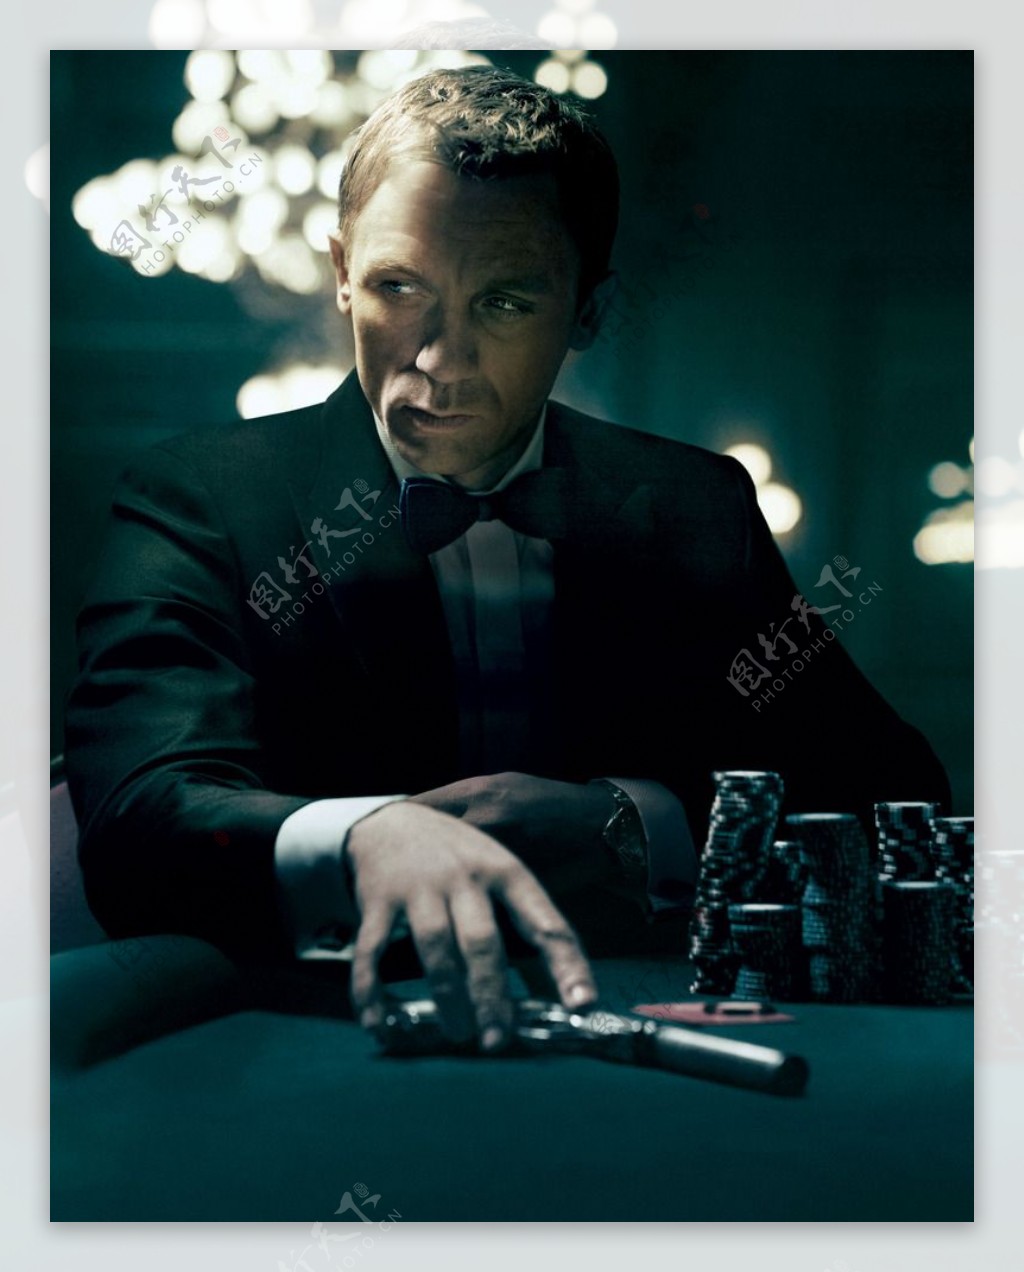 007大战皇家赌场图片